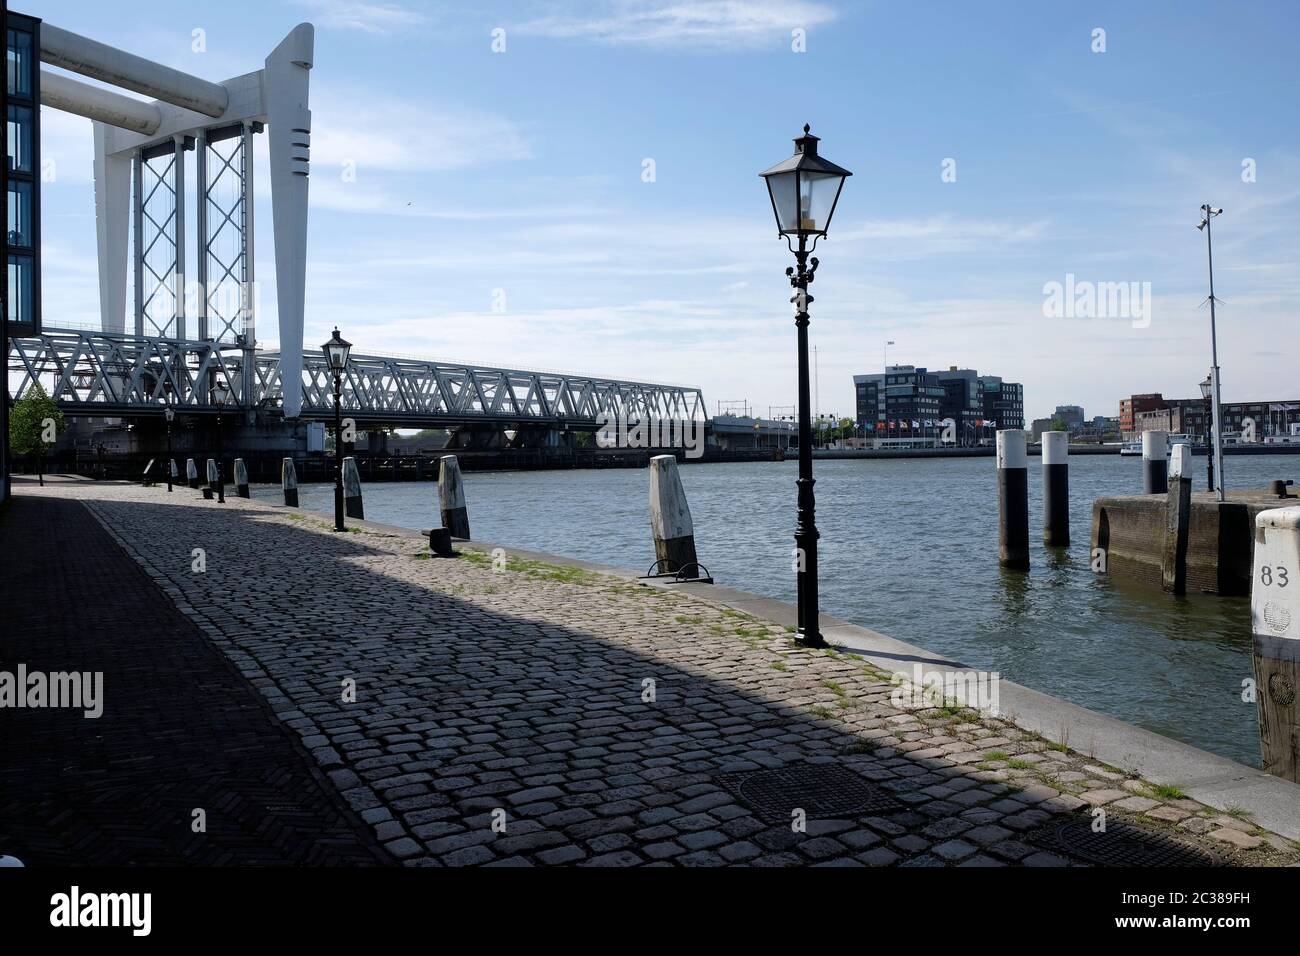 Puente ferroviario al otro lado del Oude Maas, tomado de la entrada del puerto de Kalkhaven, Dordrecht. Foto de stock